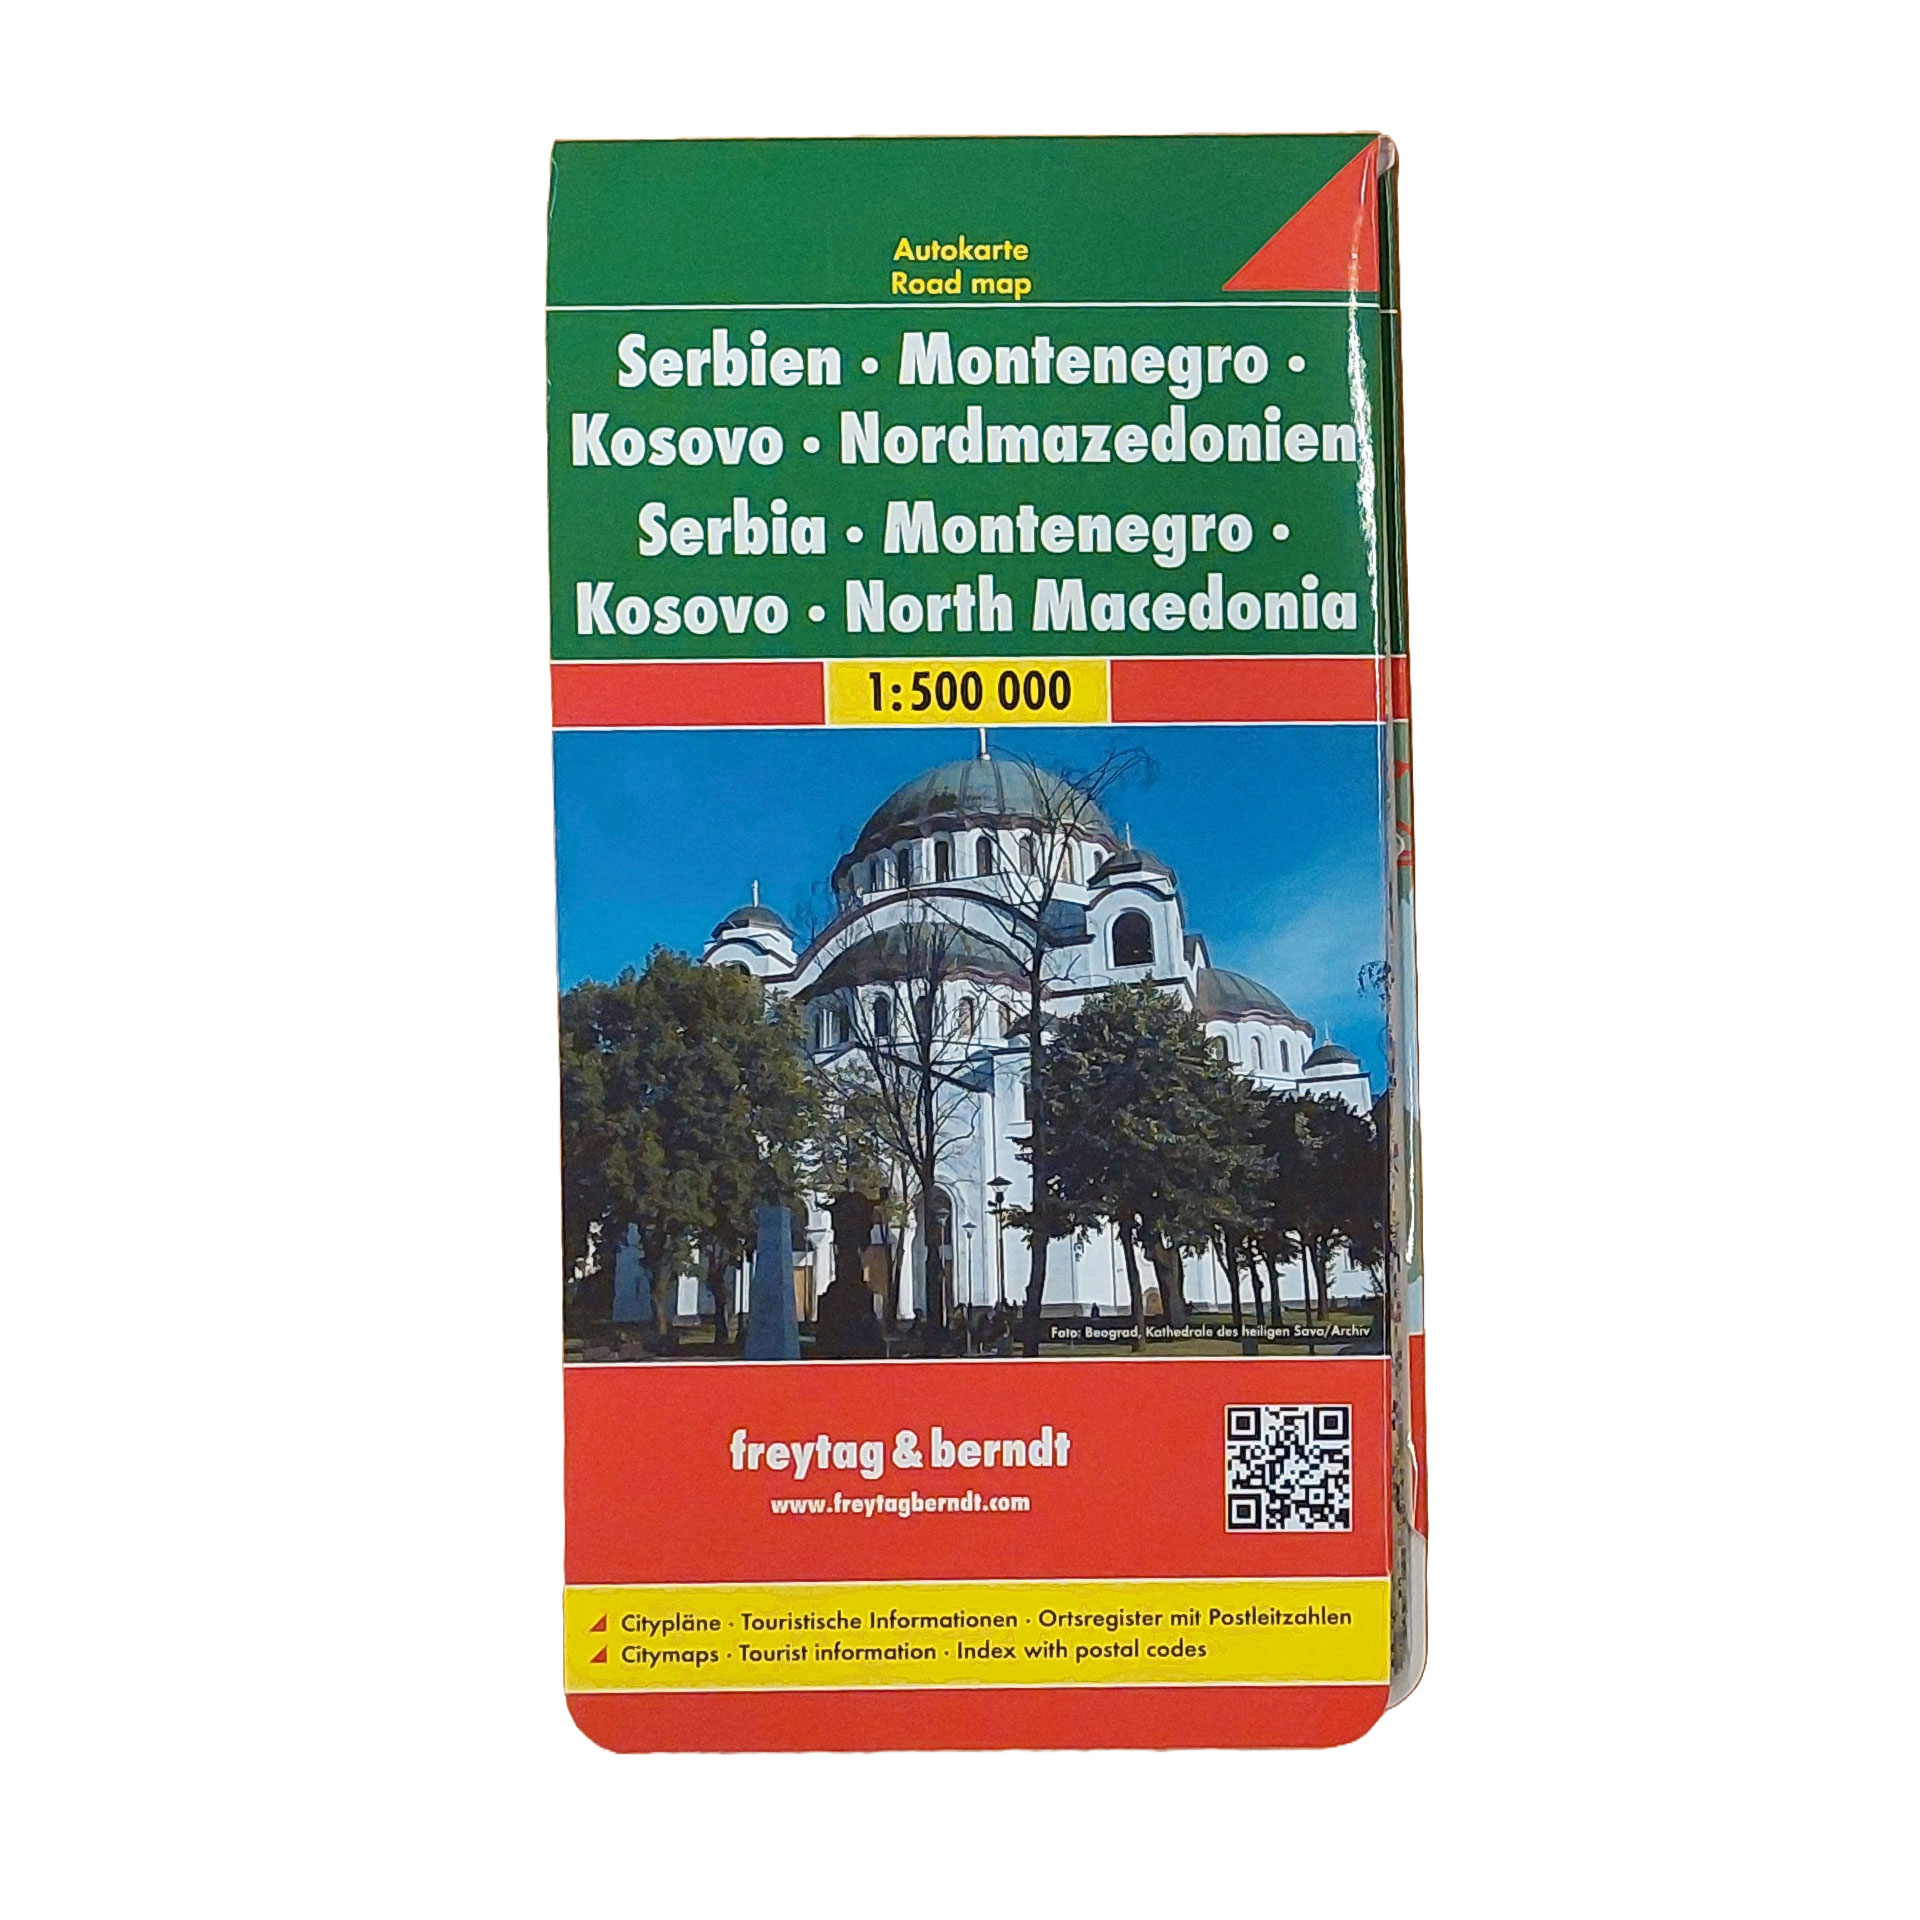 Reisekarte freytag&berdt Serbien Montenegro Kosovo Mazedonien